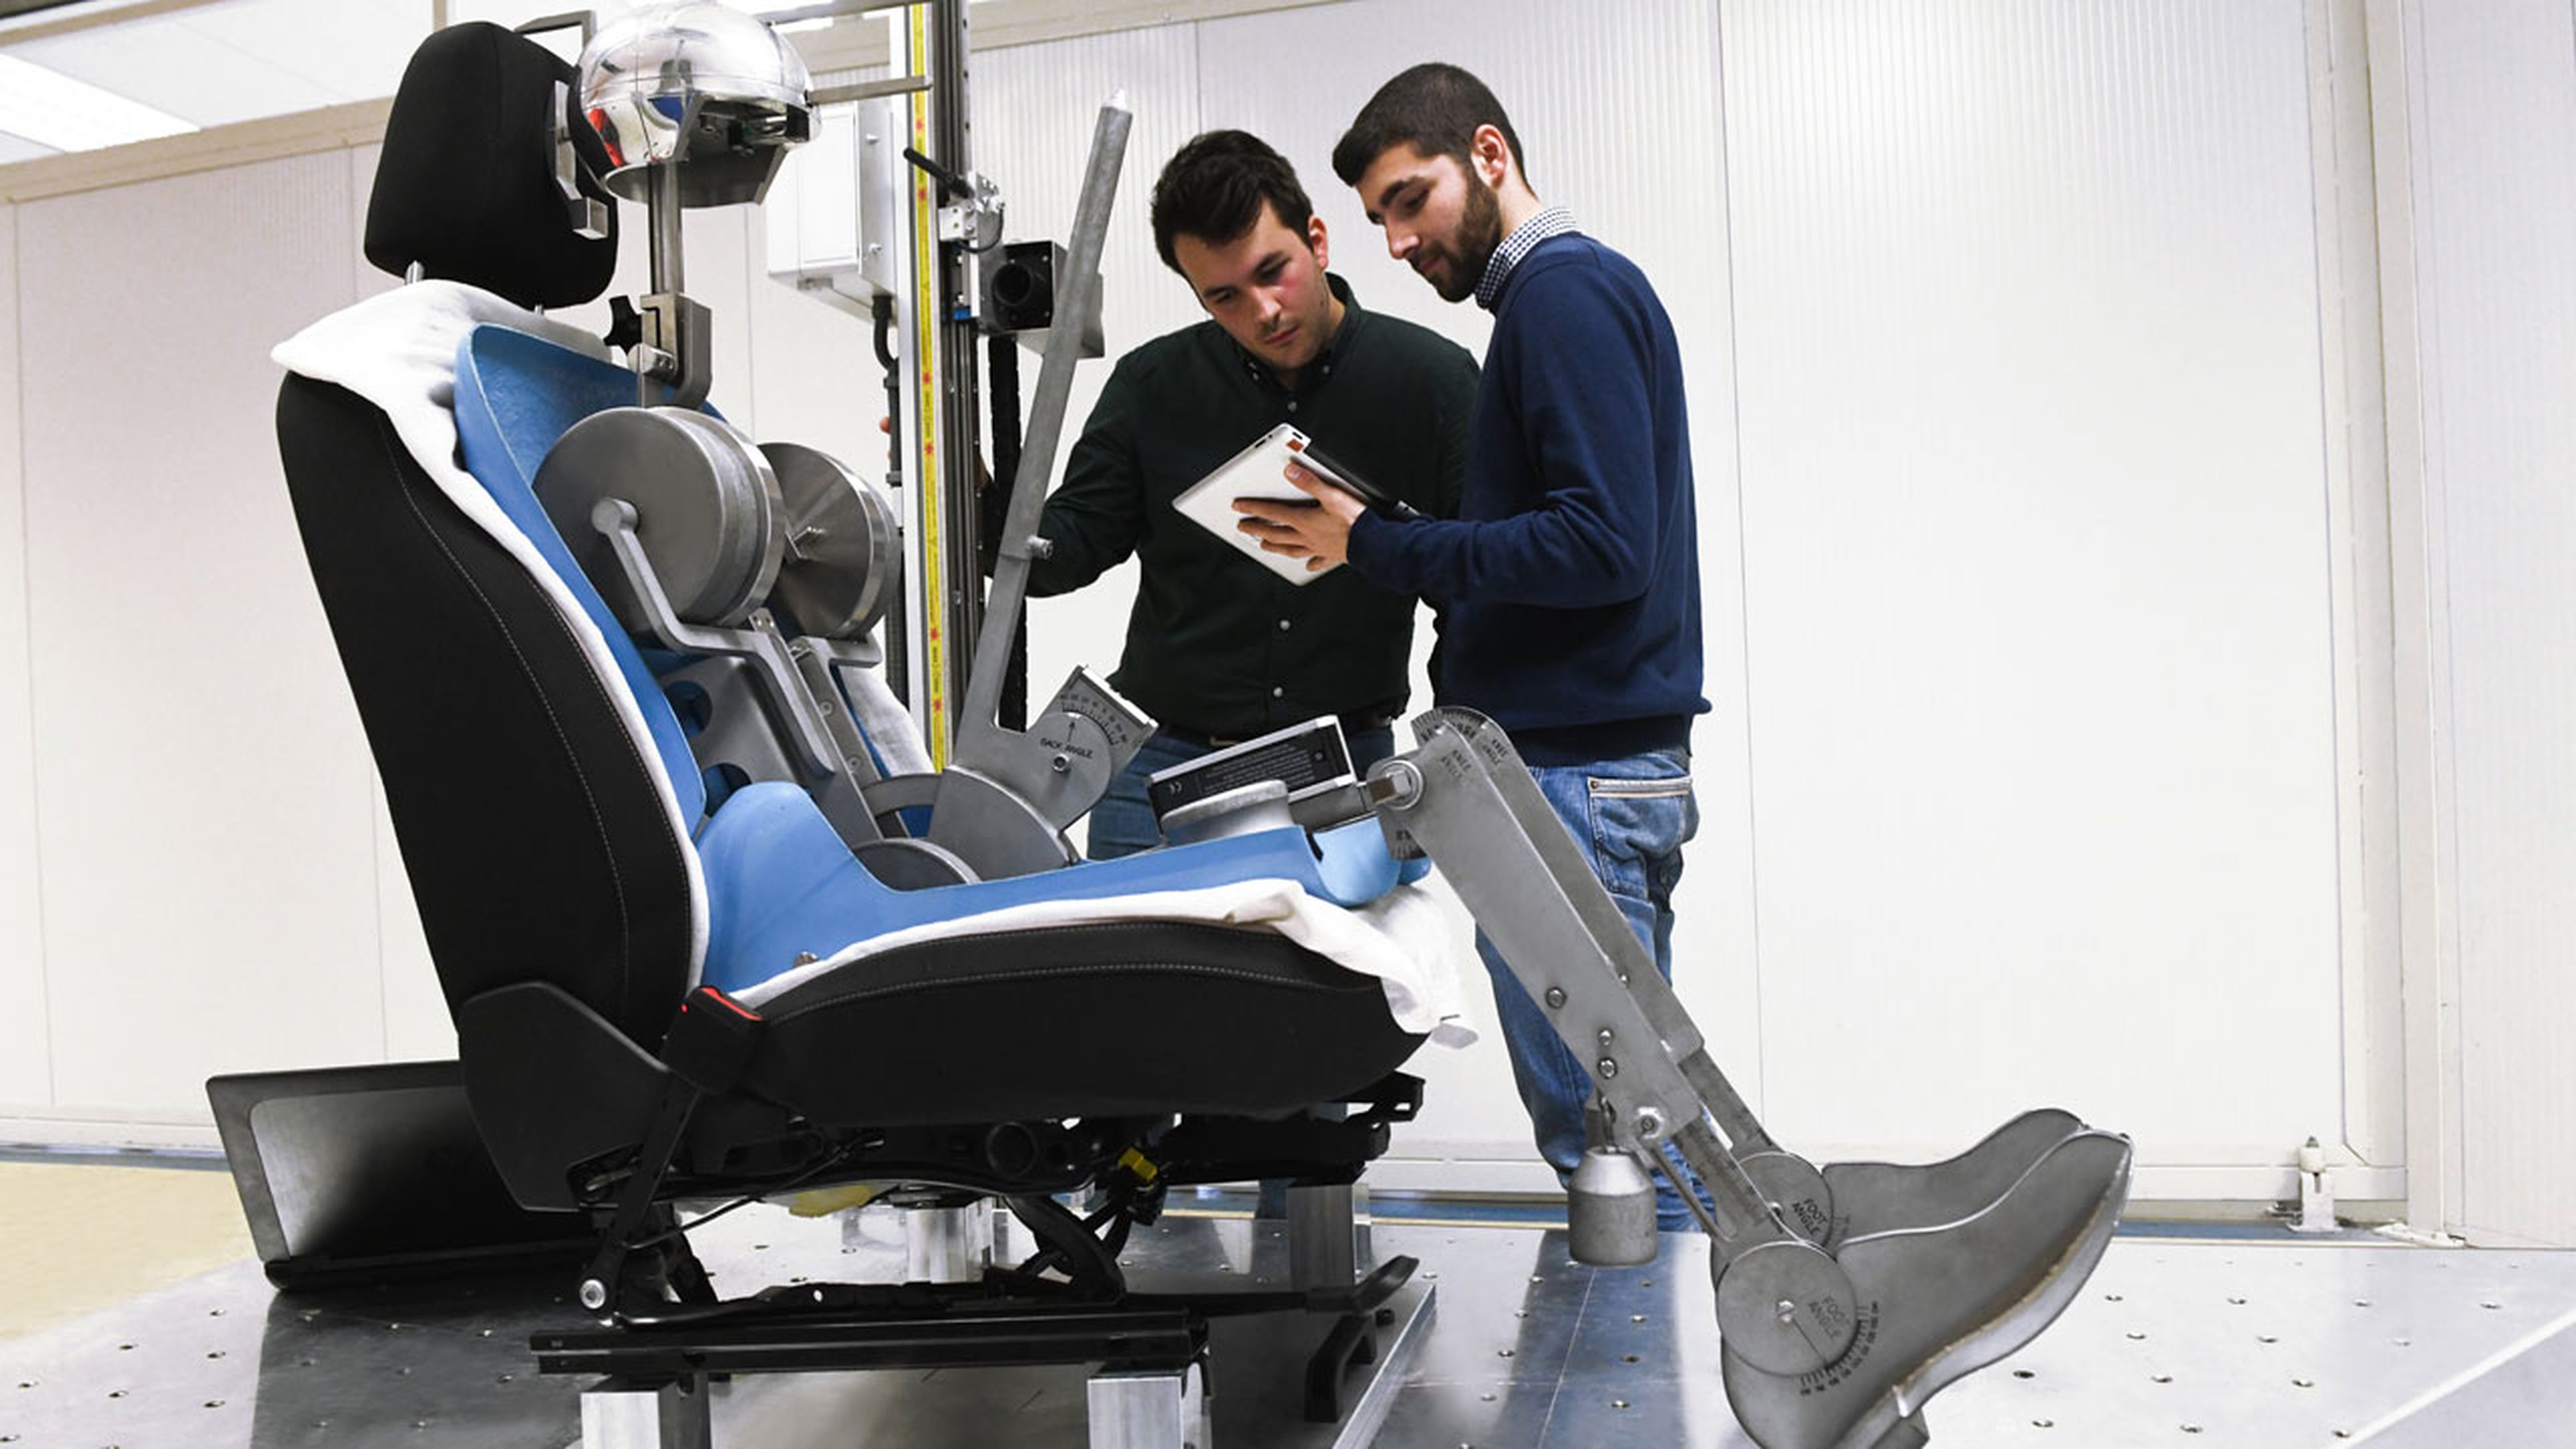 Los robots son fundamentales para investigar la ergonomía y duración de los asientos